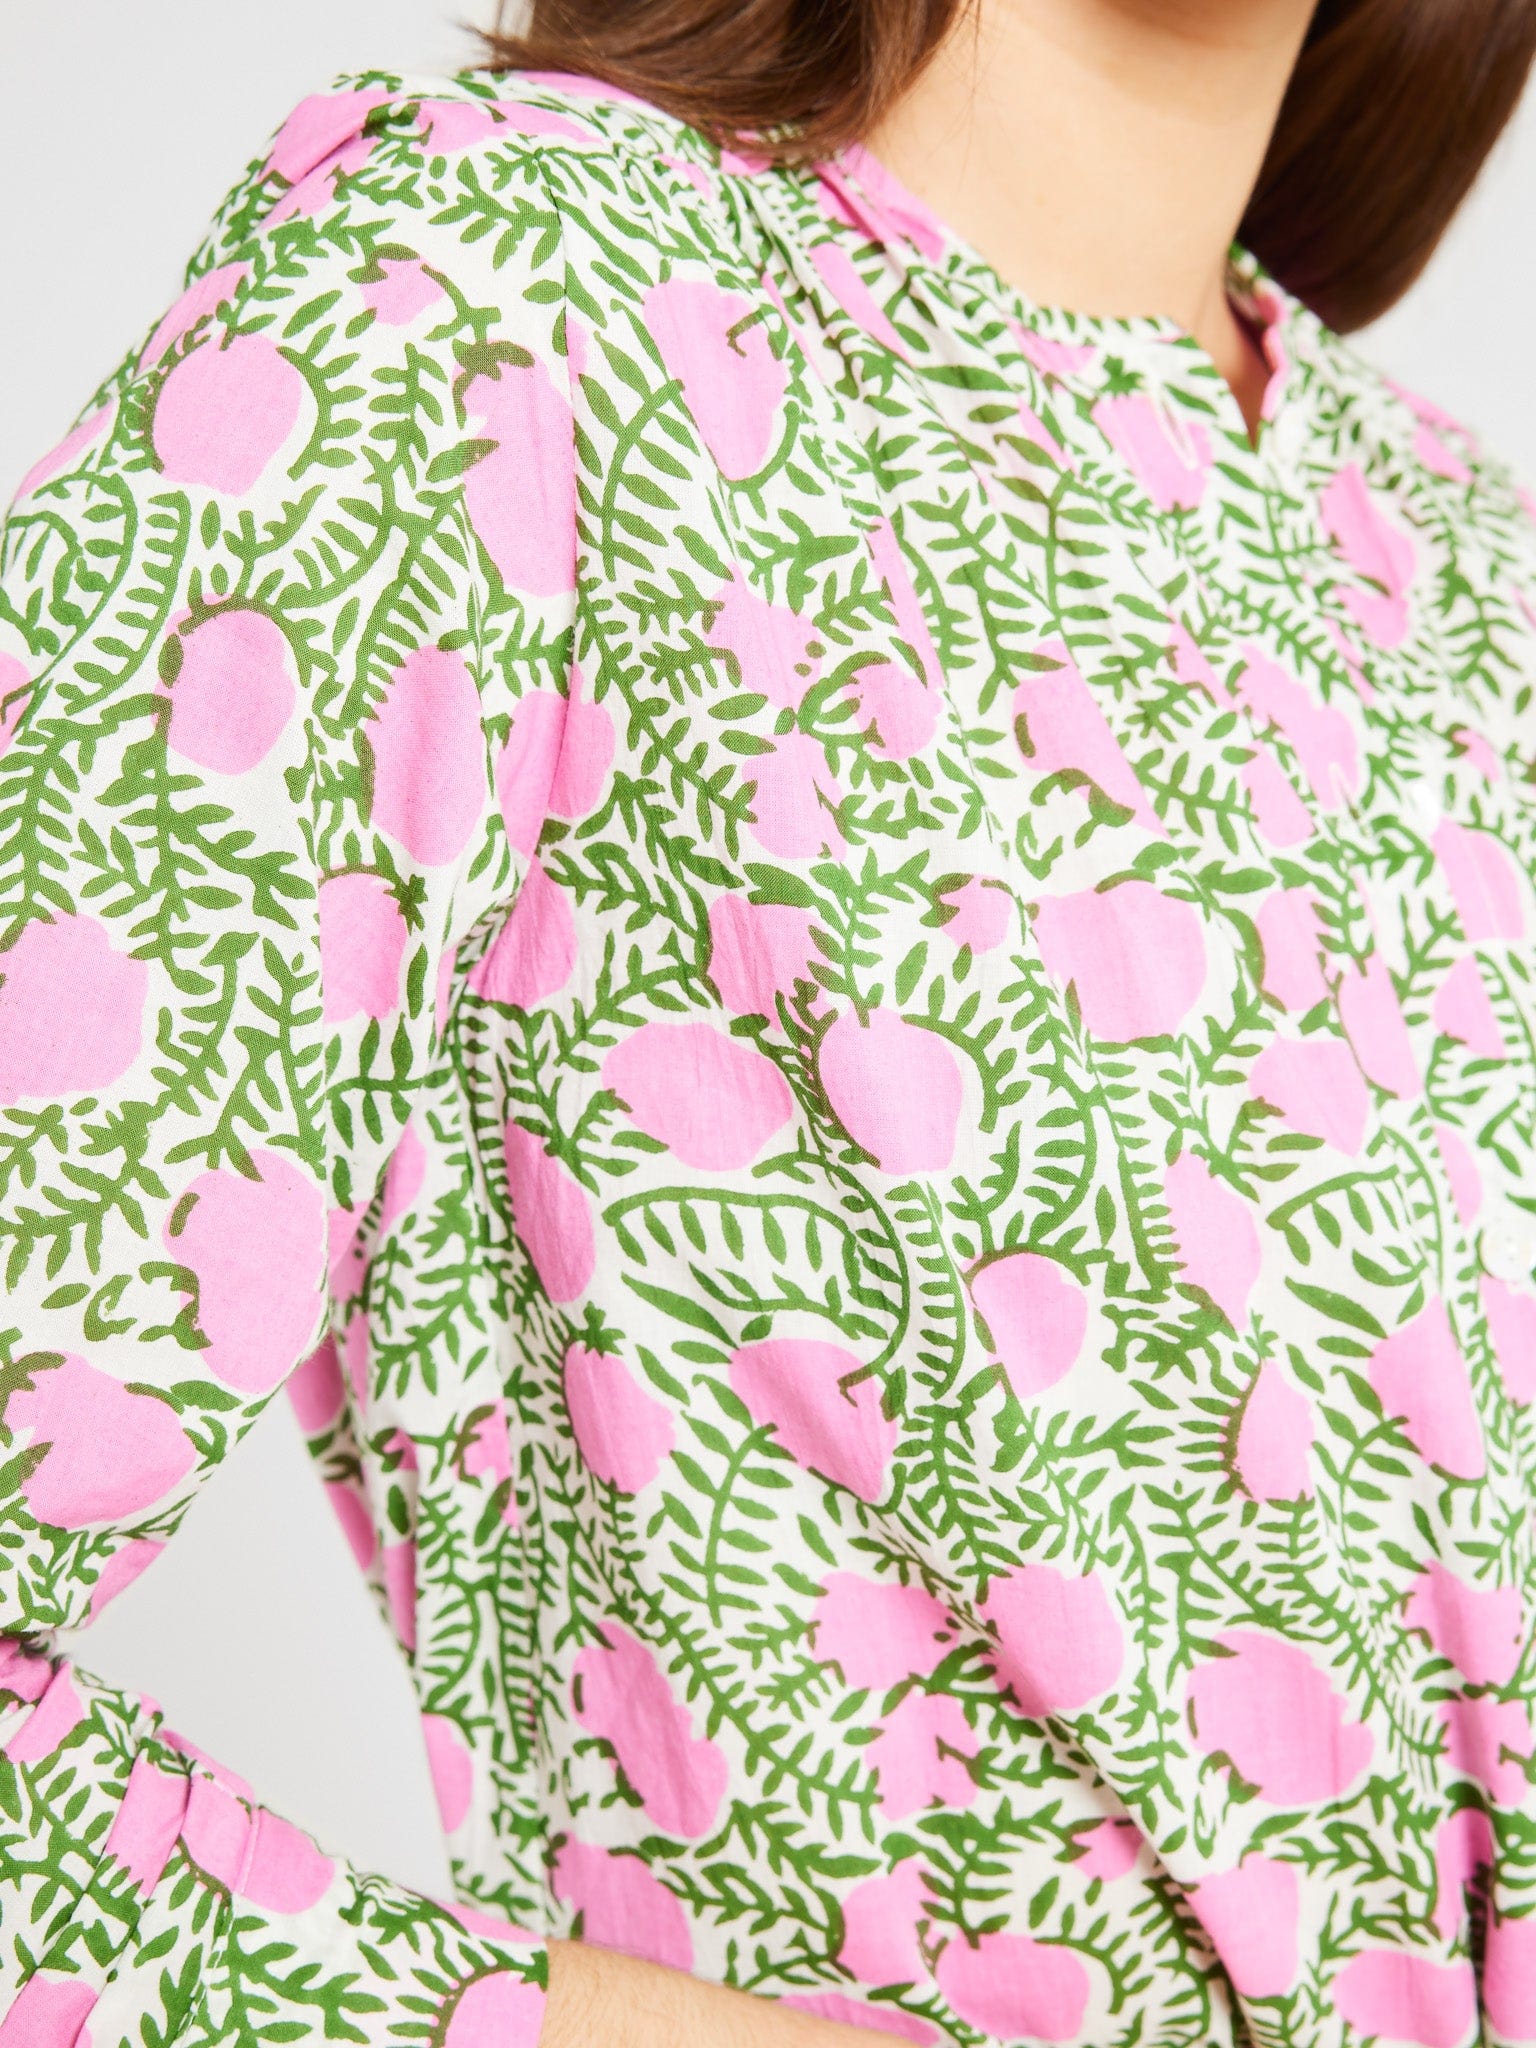 MILLE Clothing Florian Top in Pink Lemonade